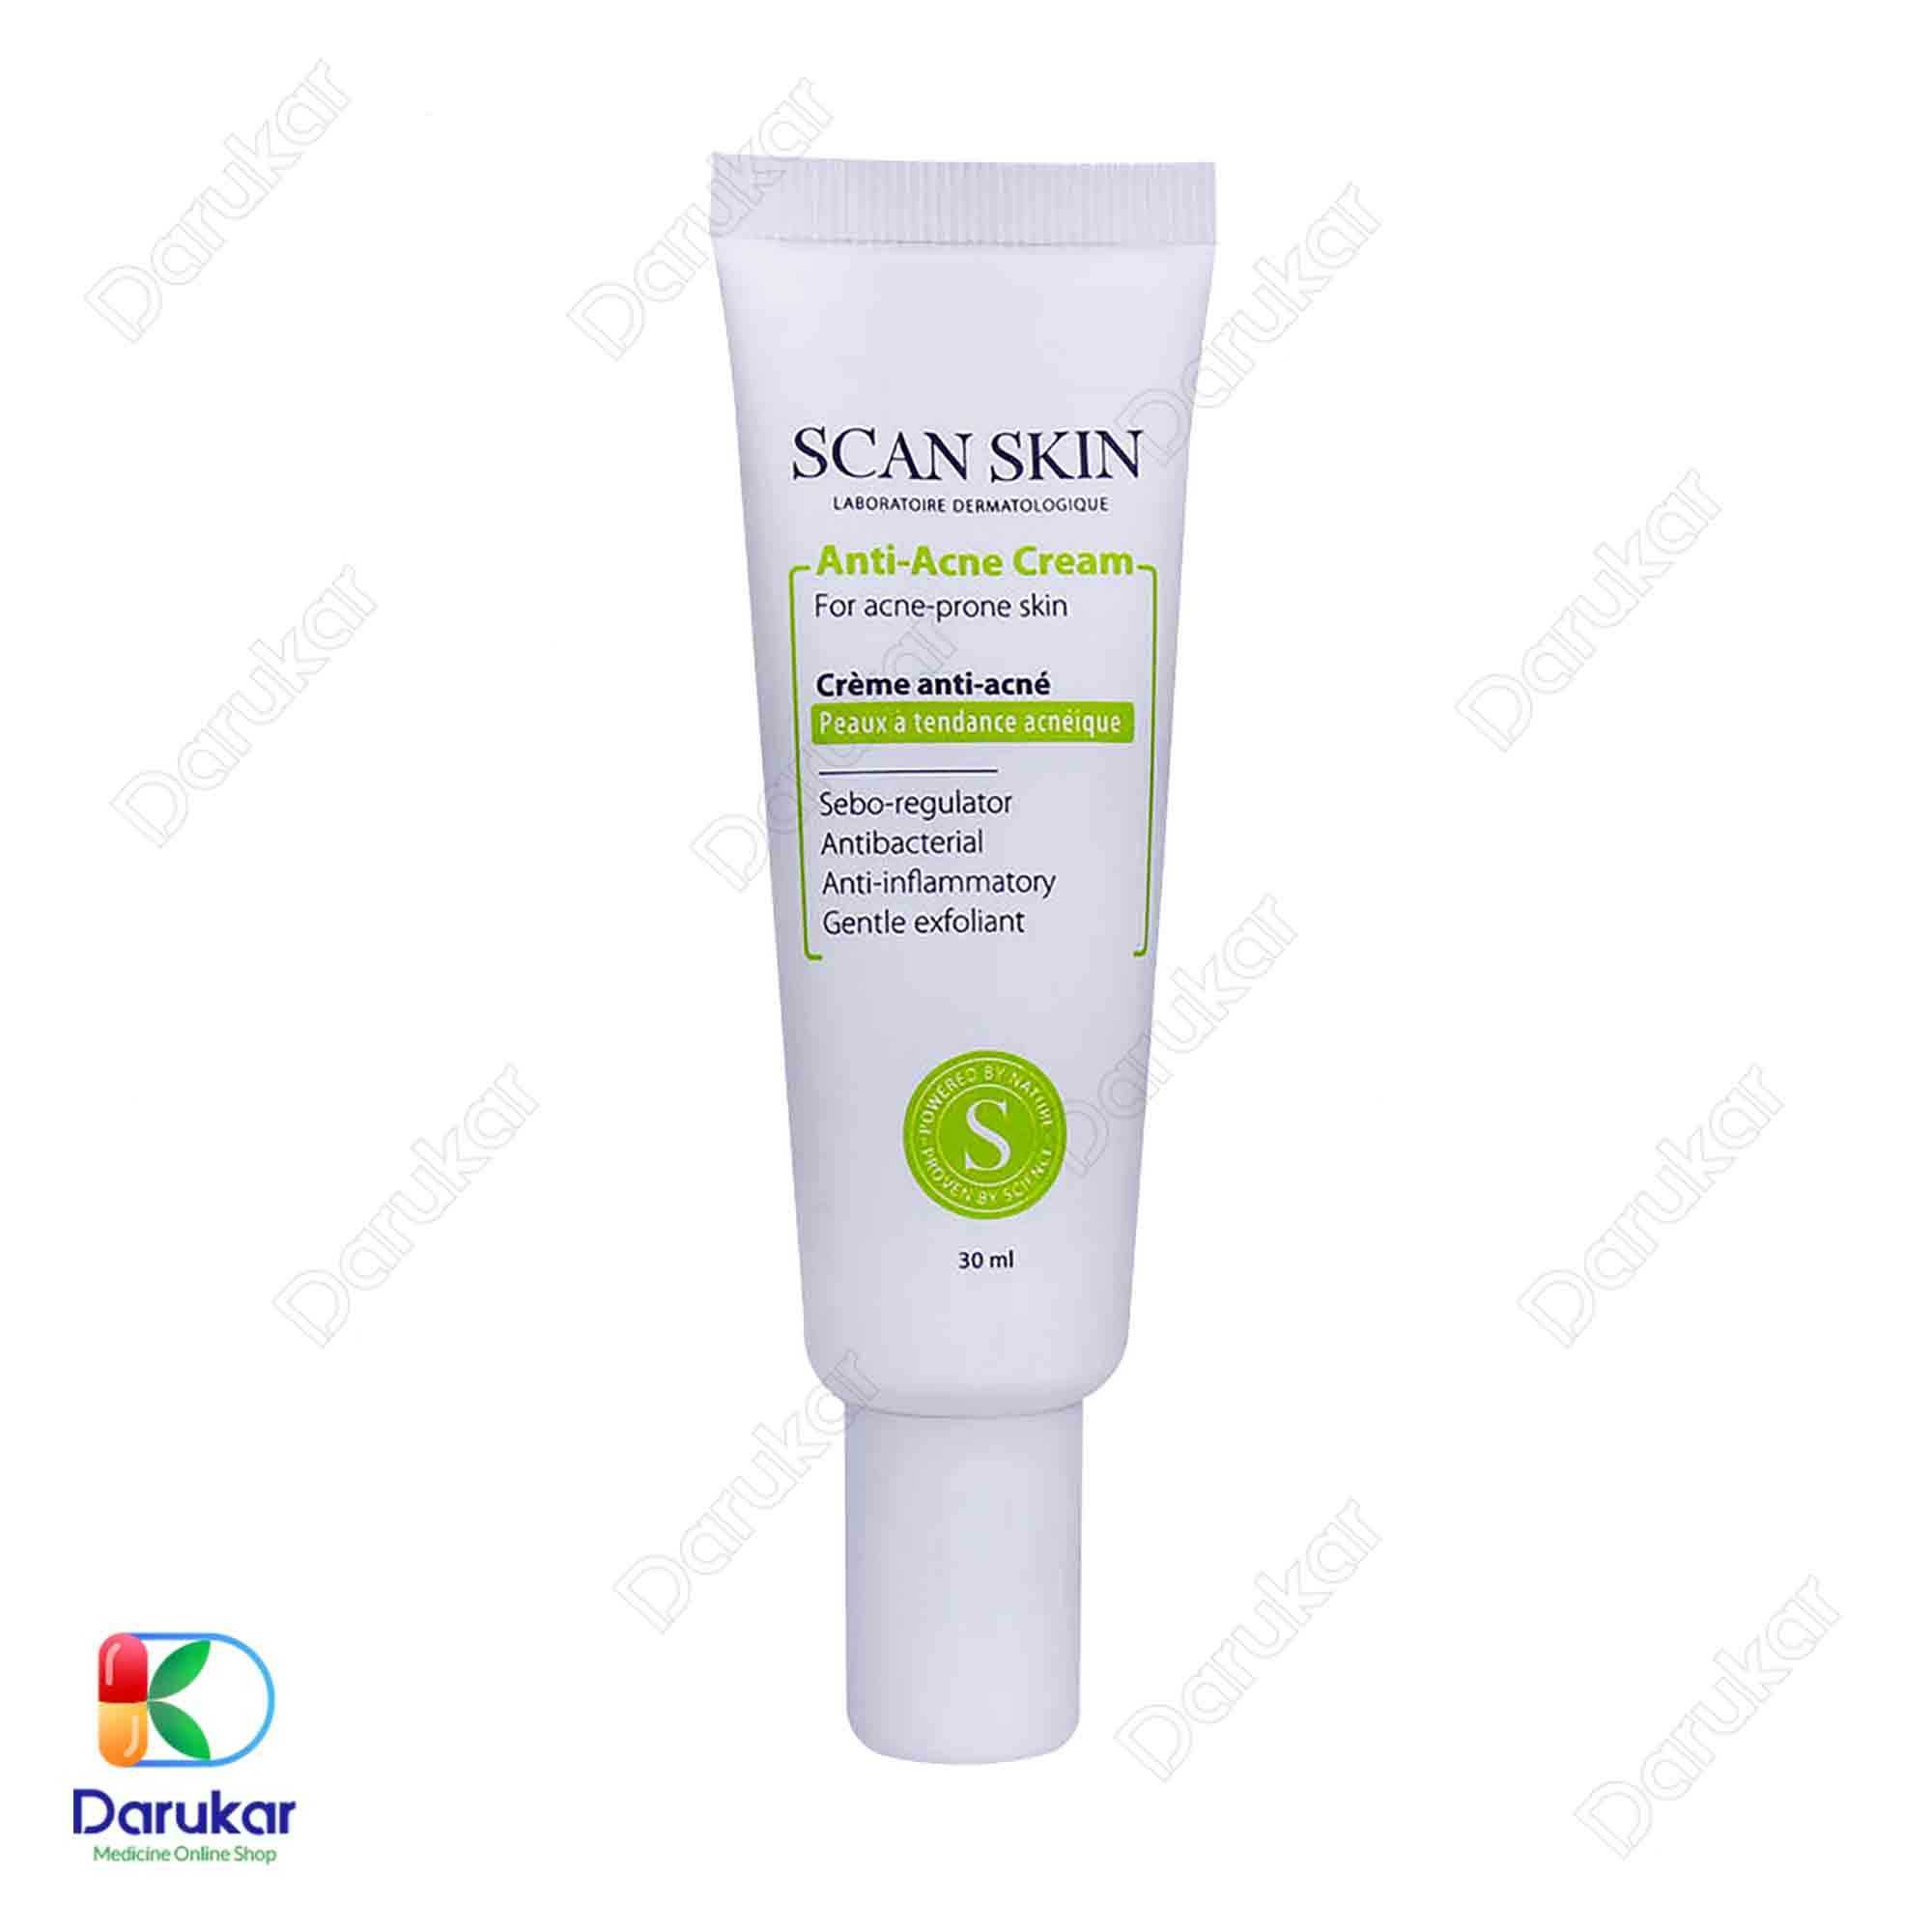 Scan skin anti acne cream 30 ml 1